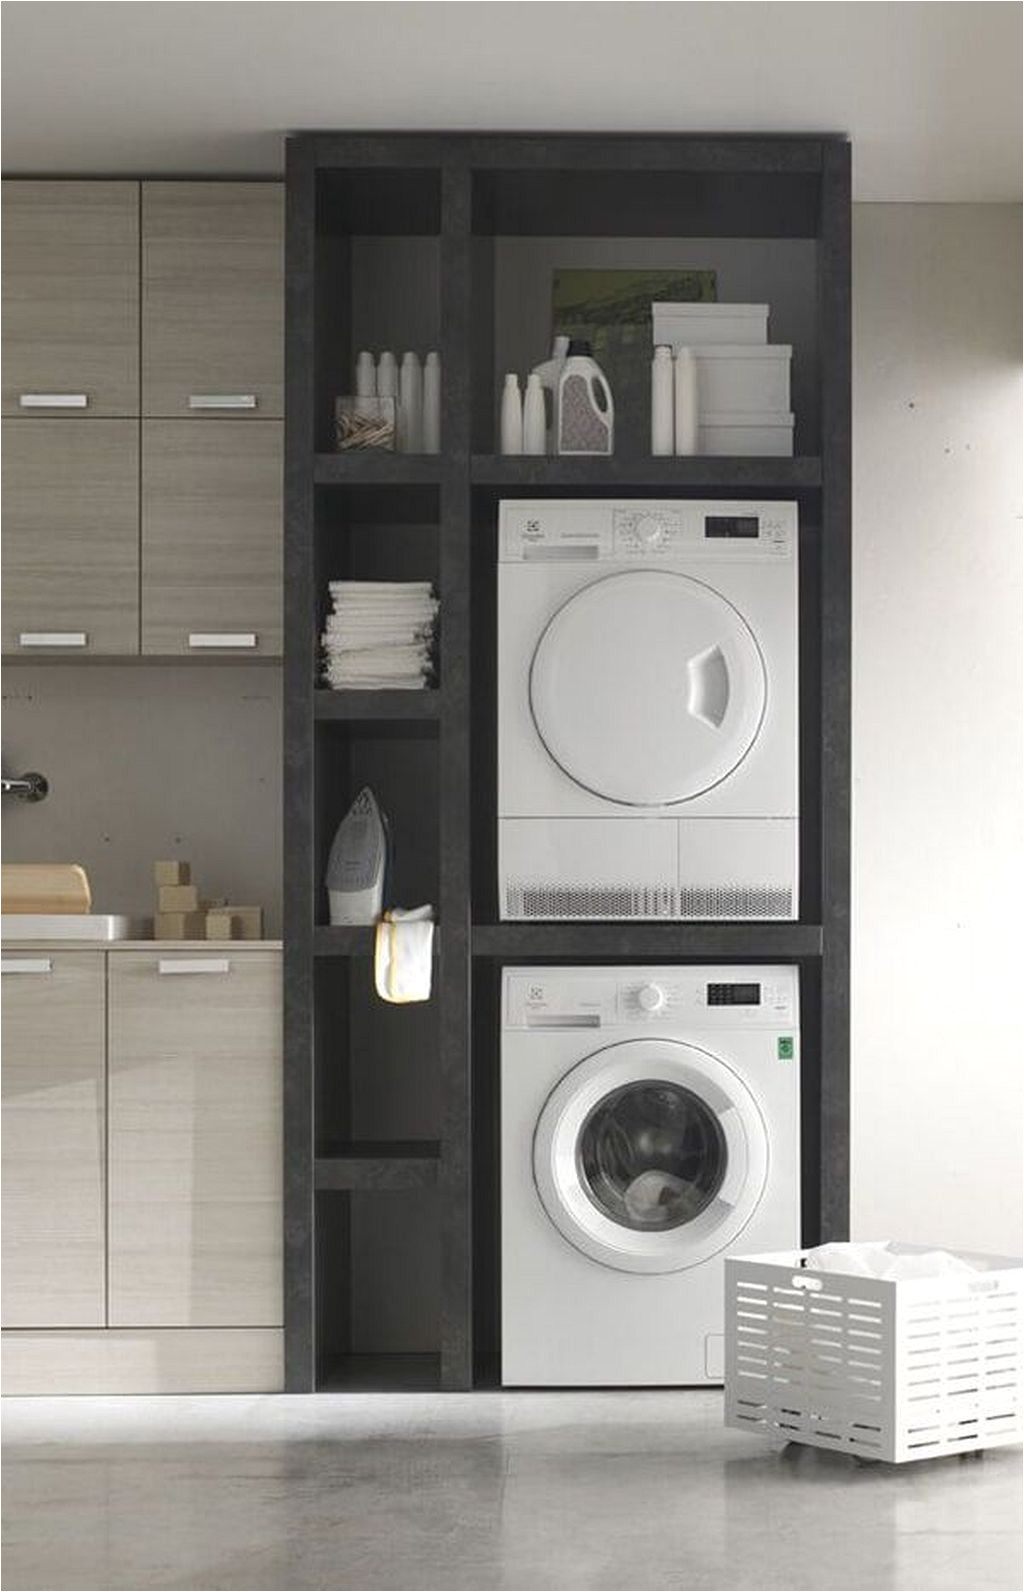 Washer and Dryer Pedestal Ikea Laundry Storage Shelves Ideas 6 Laundry Room Pinterest Laundry